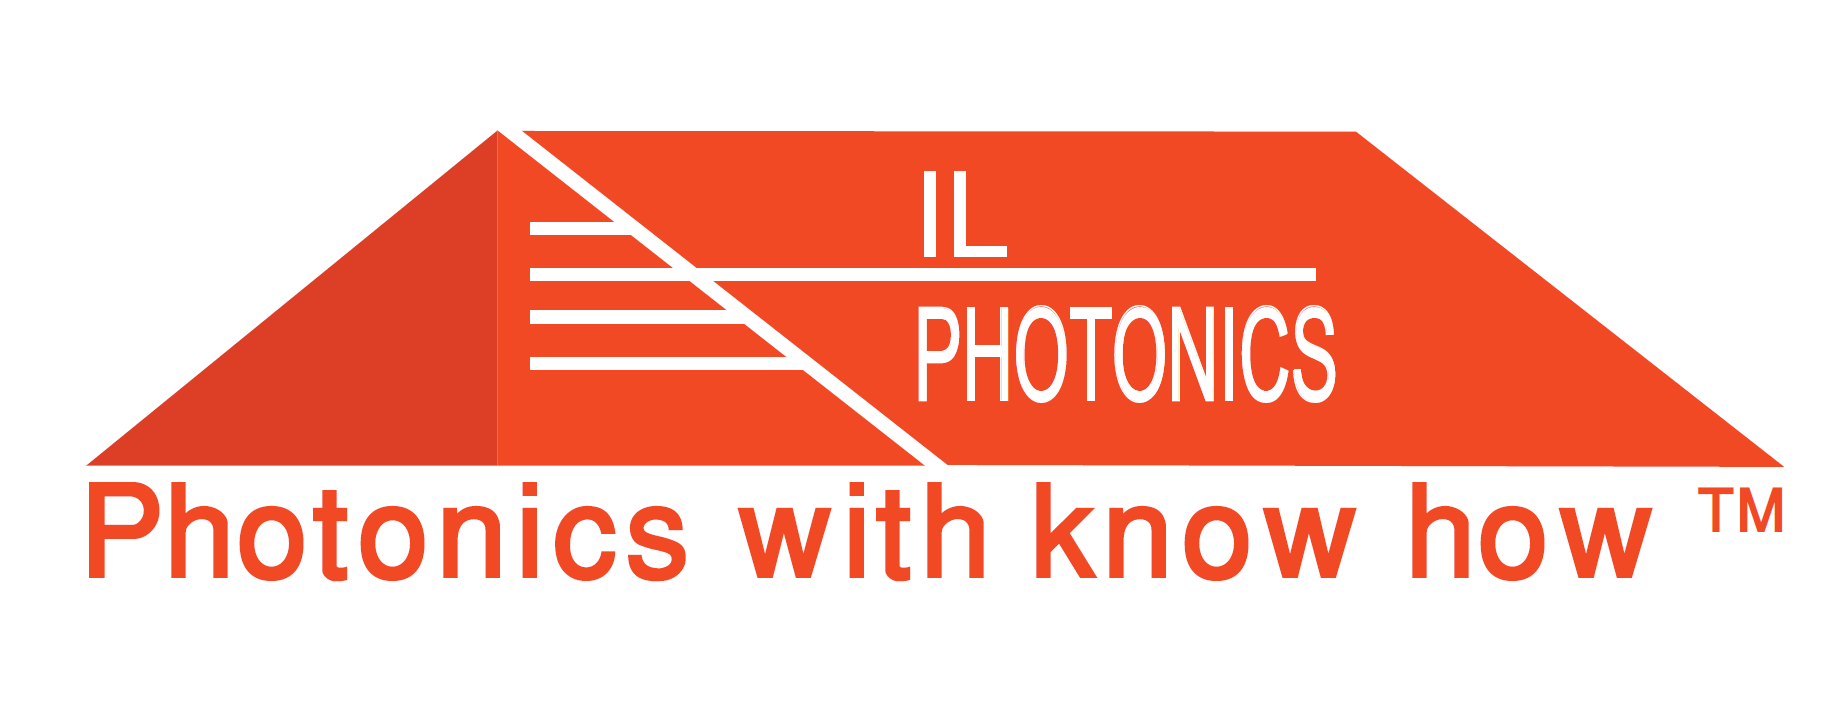 Israel - IL Photonics BSD Ltd.